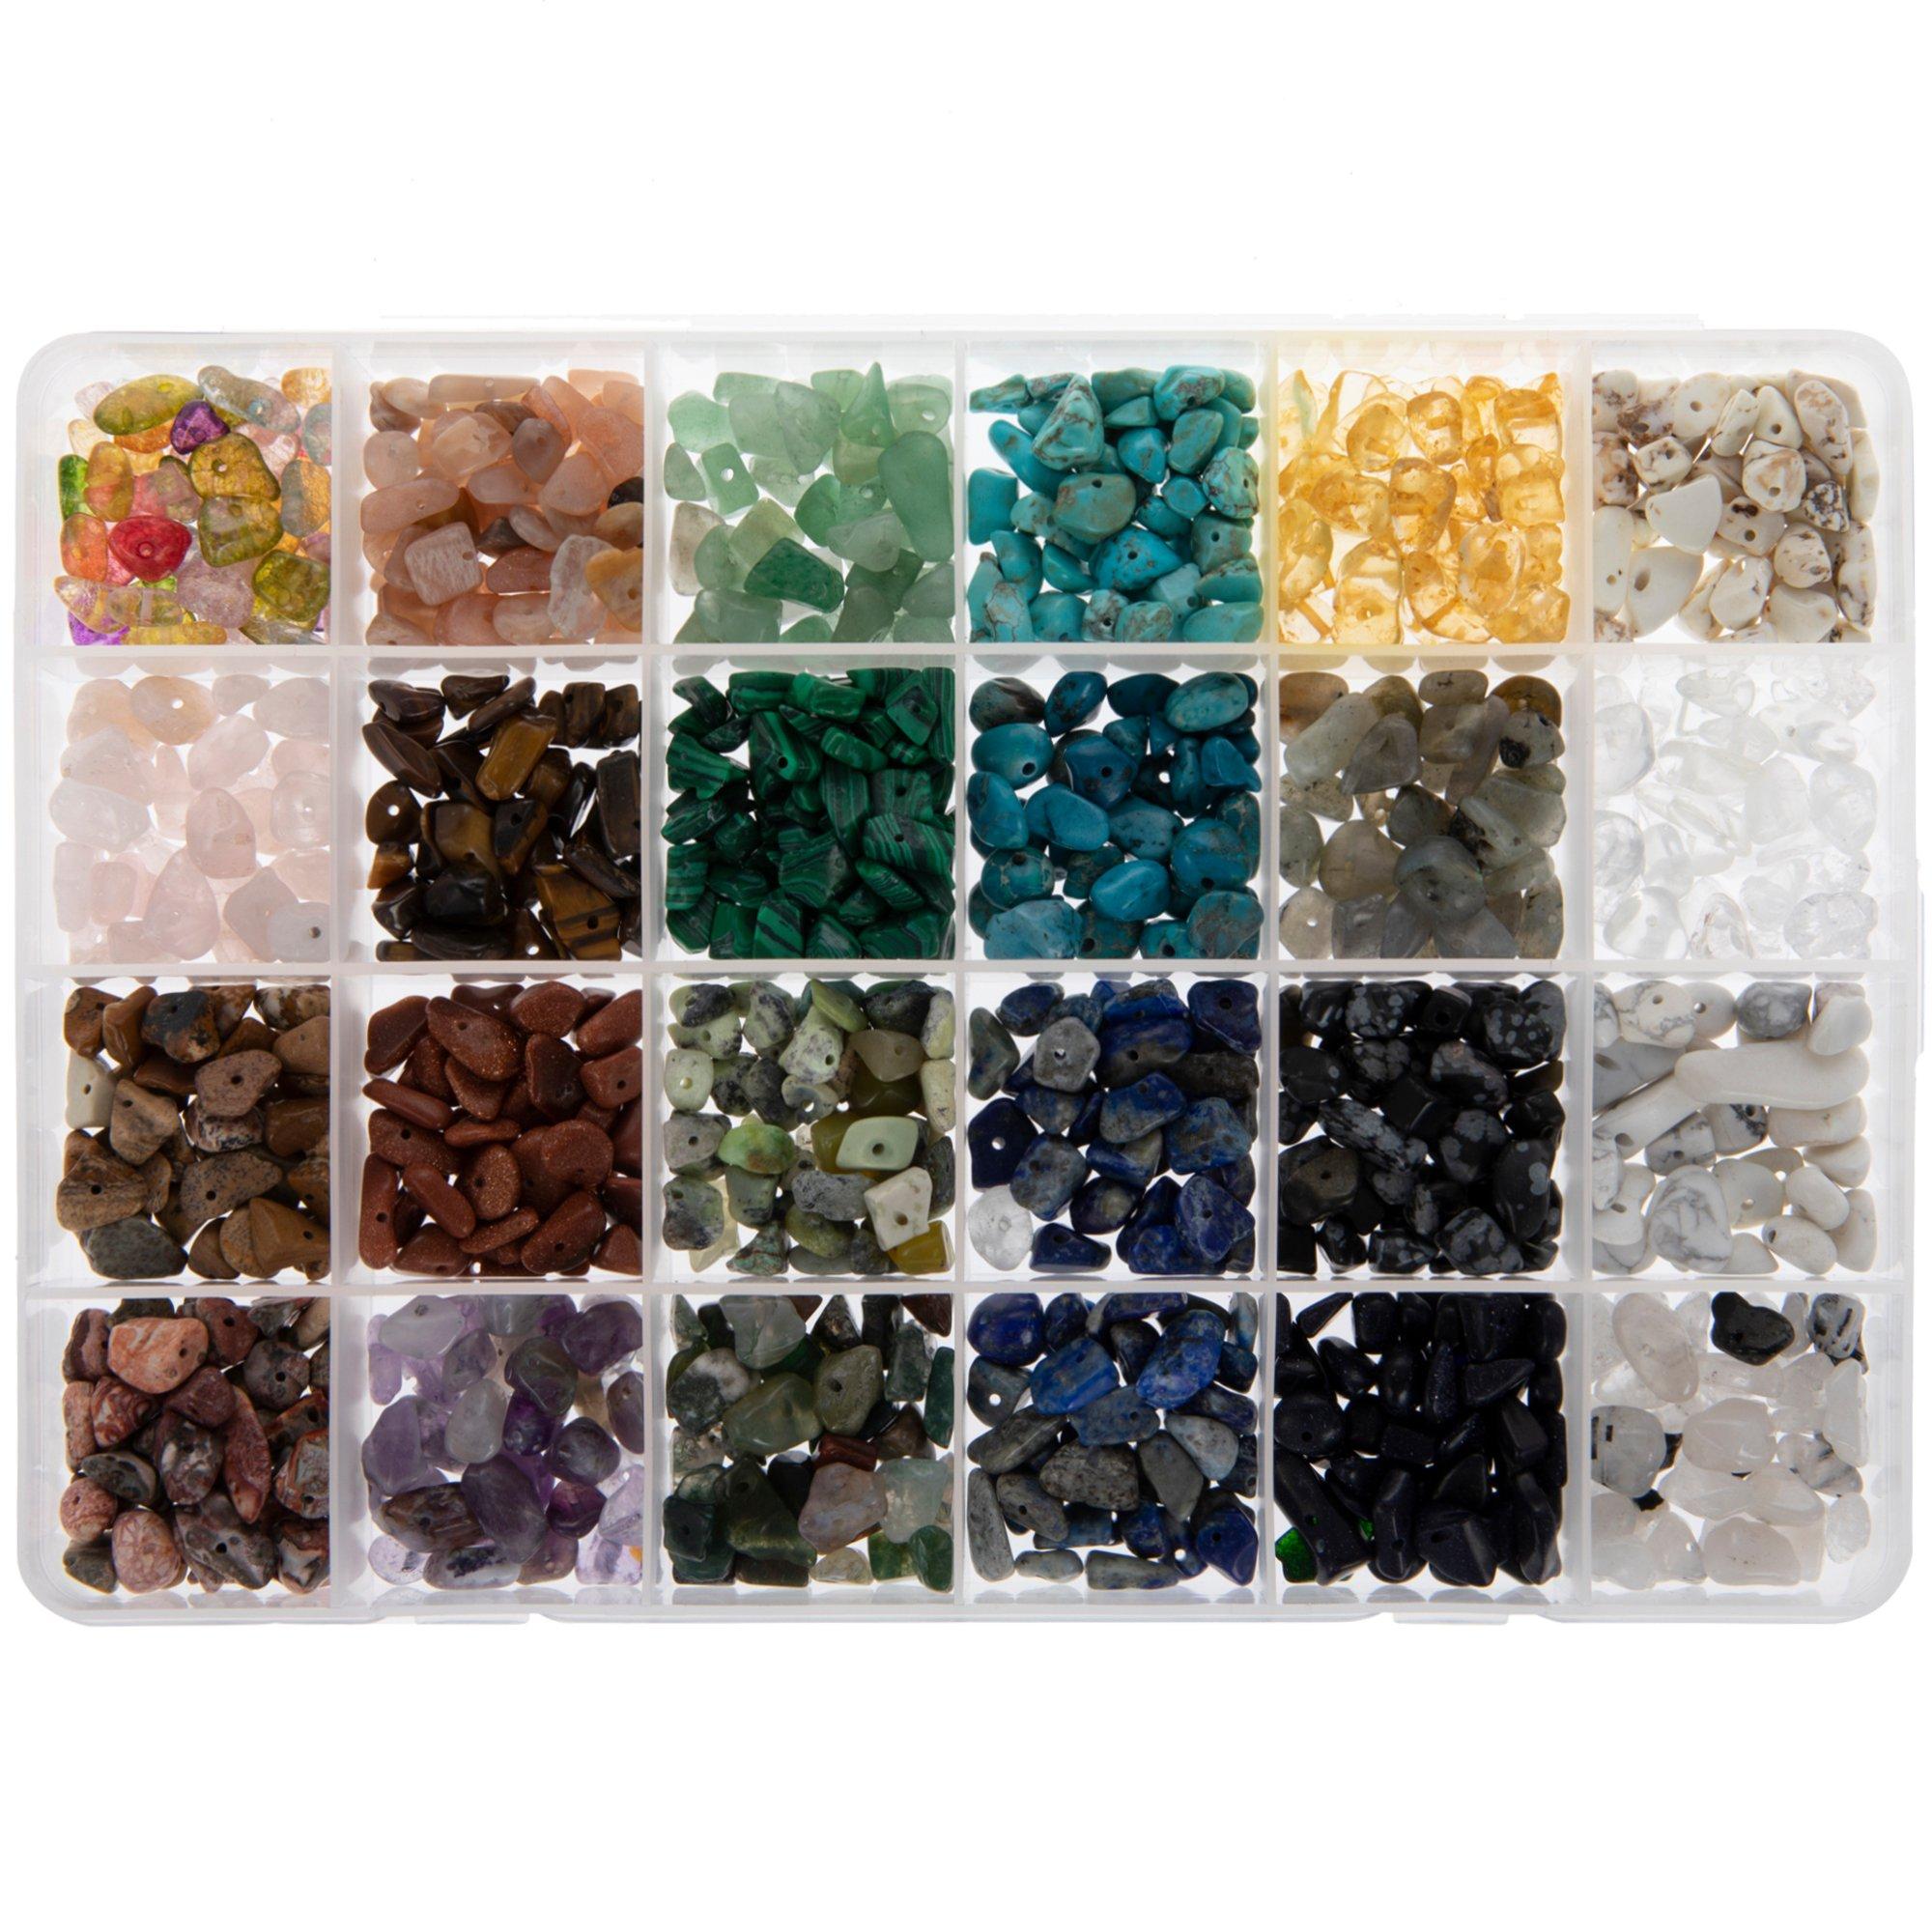 New Mexico Bead Company  Semi Precious Stone Bead Supply Store